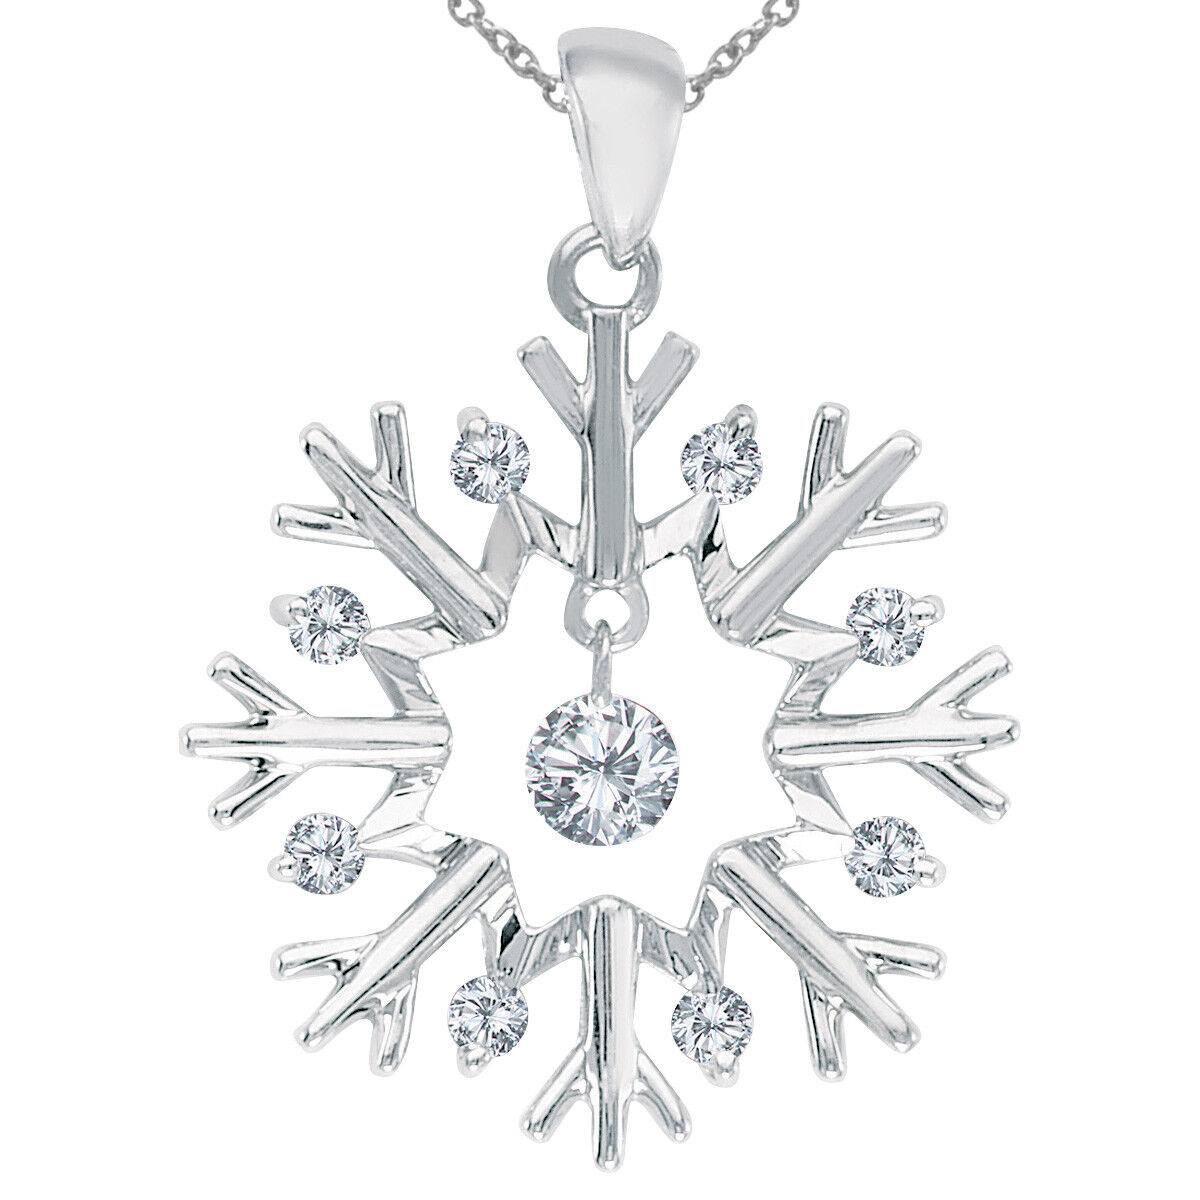 10K White Gold Dashing Diamonds Snowflake Pendant With 18" Chain